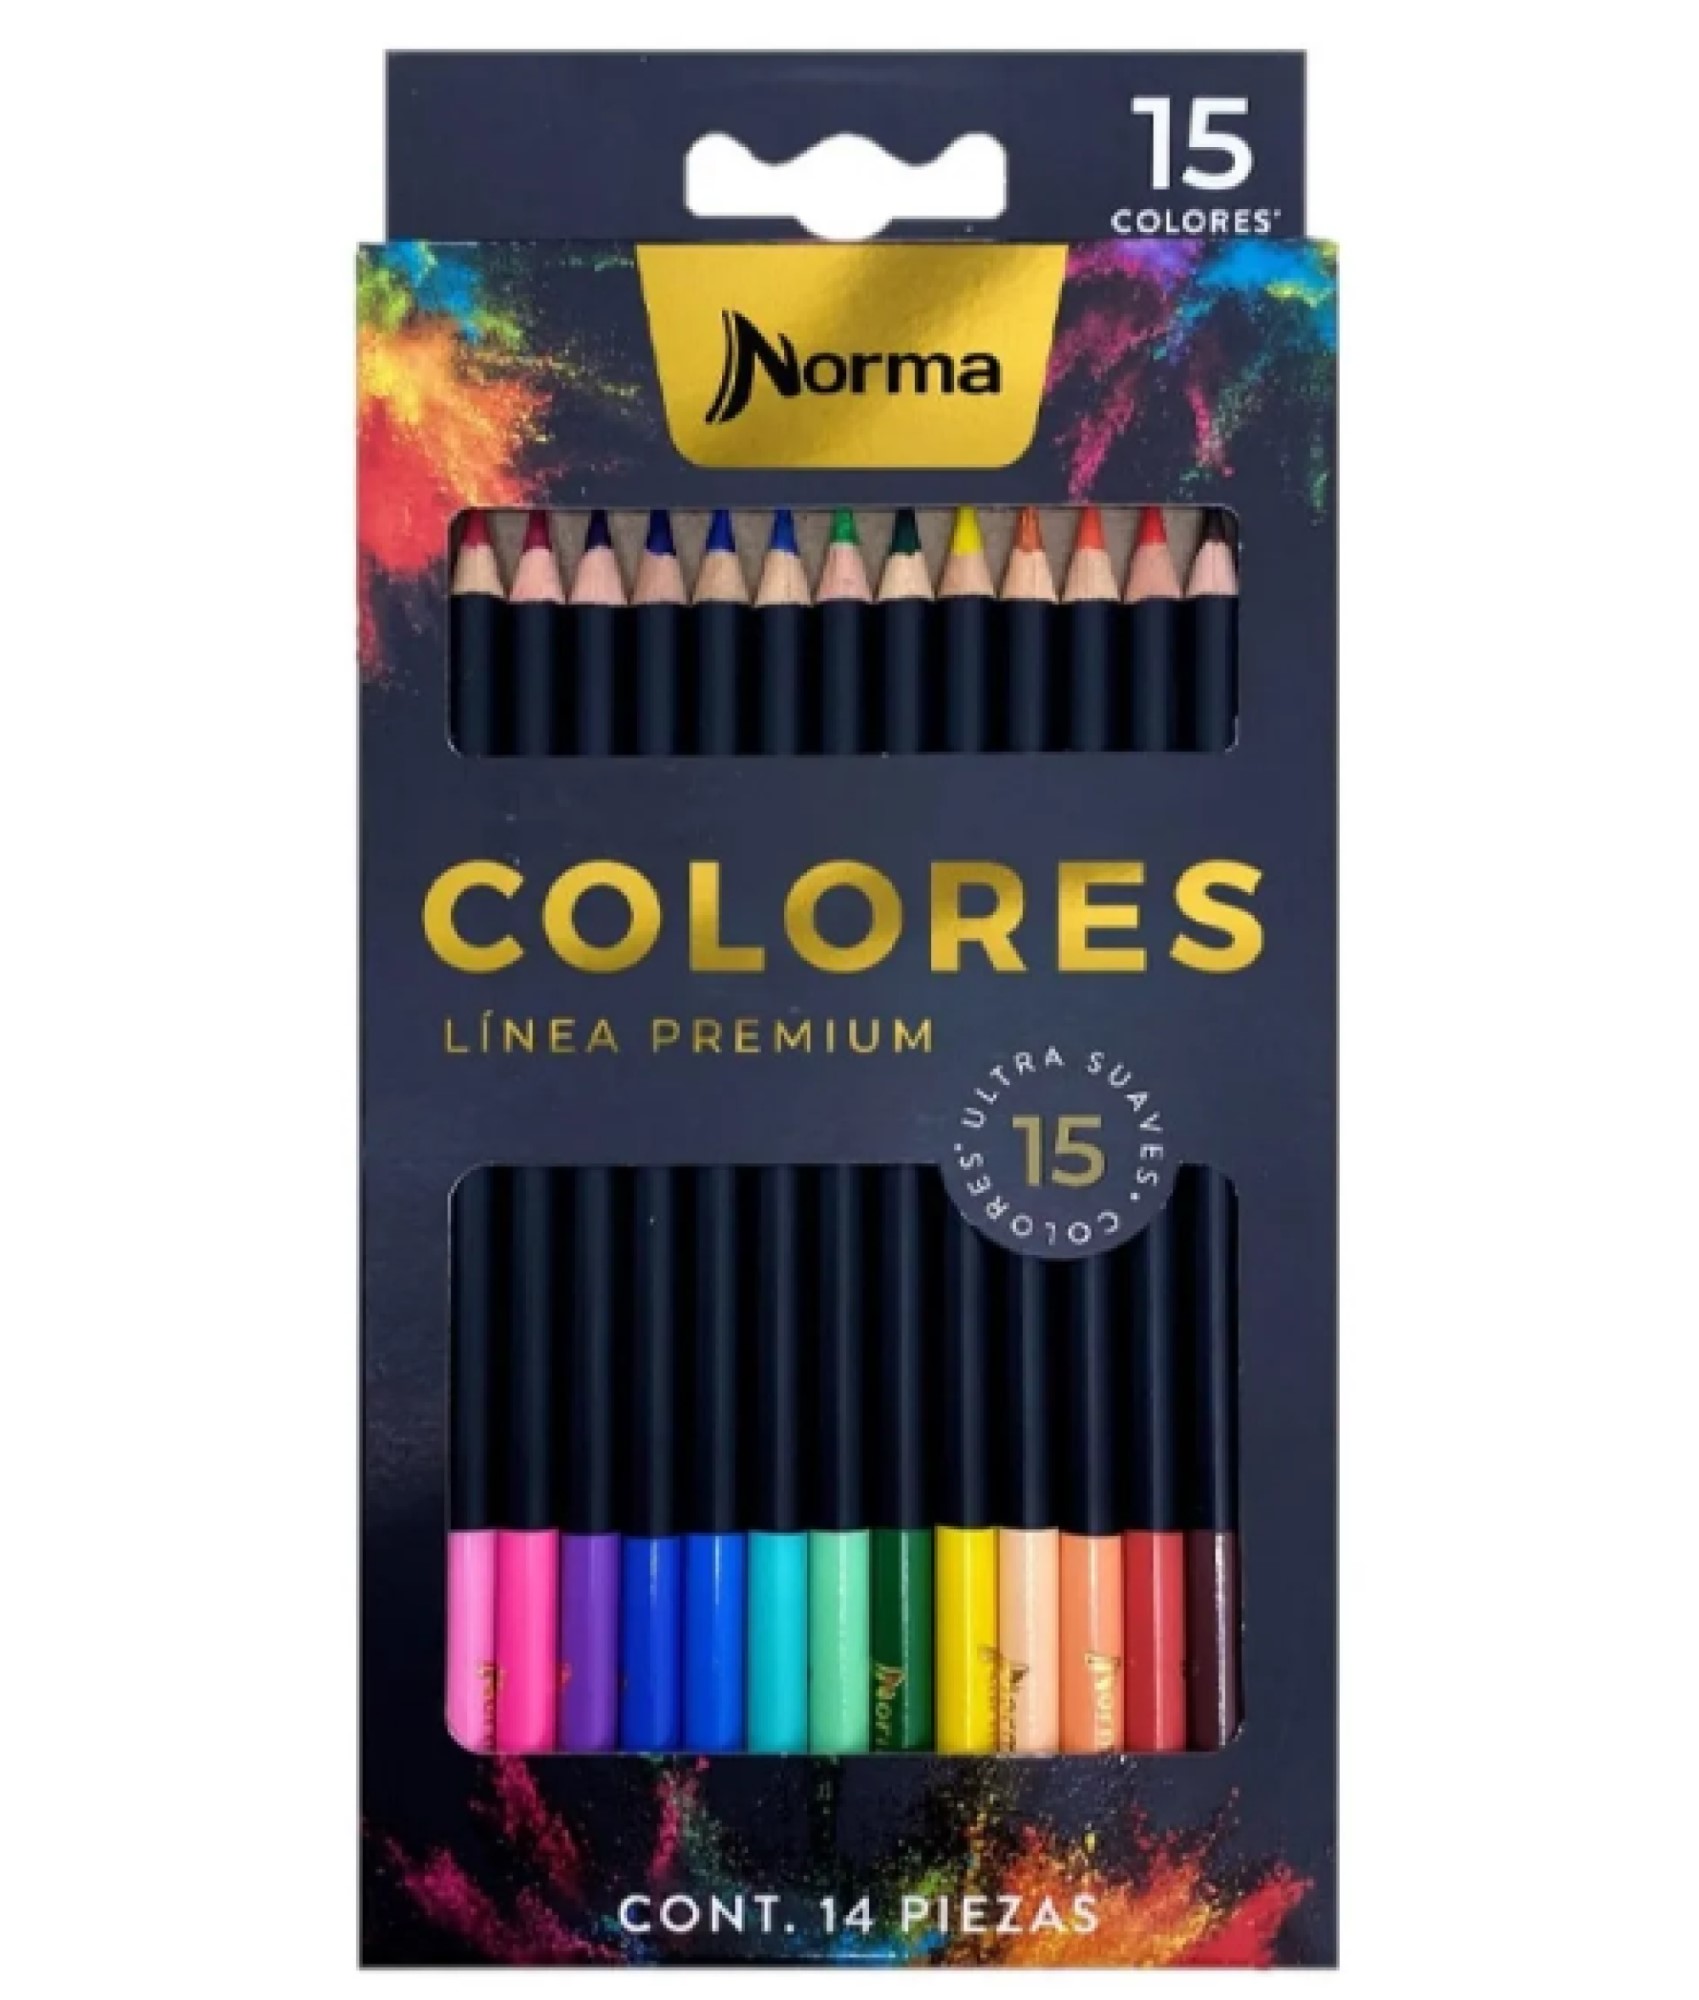 Colores Norma Premium x15 Ud.